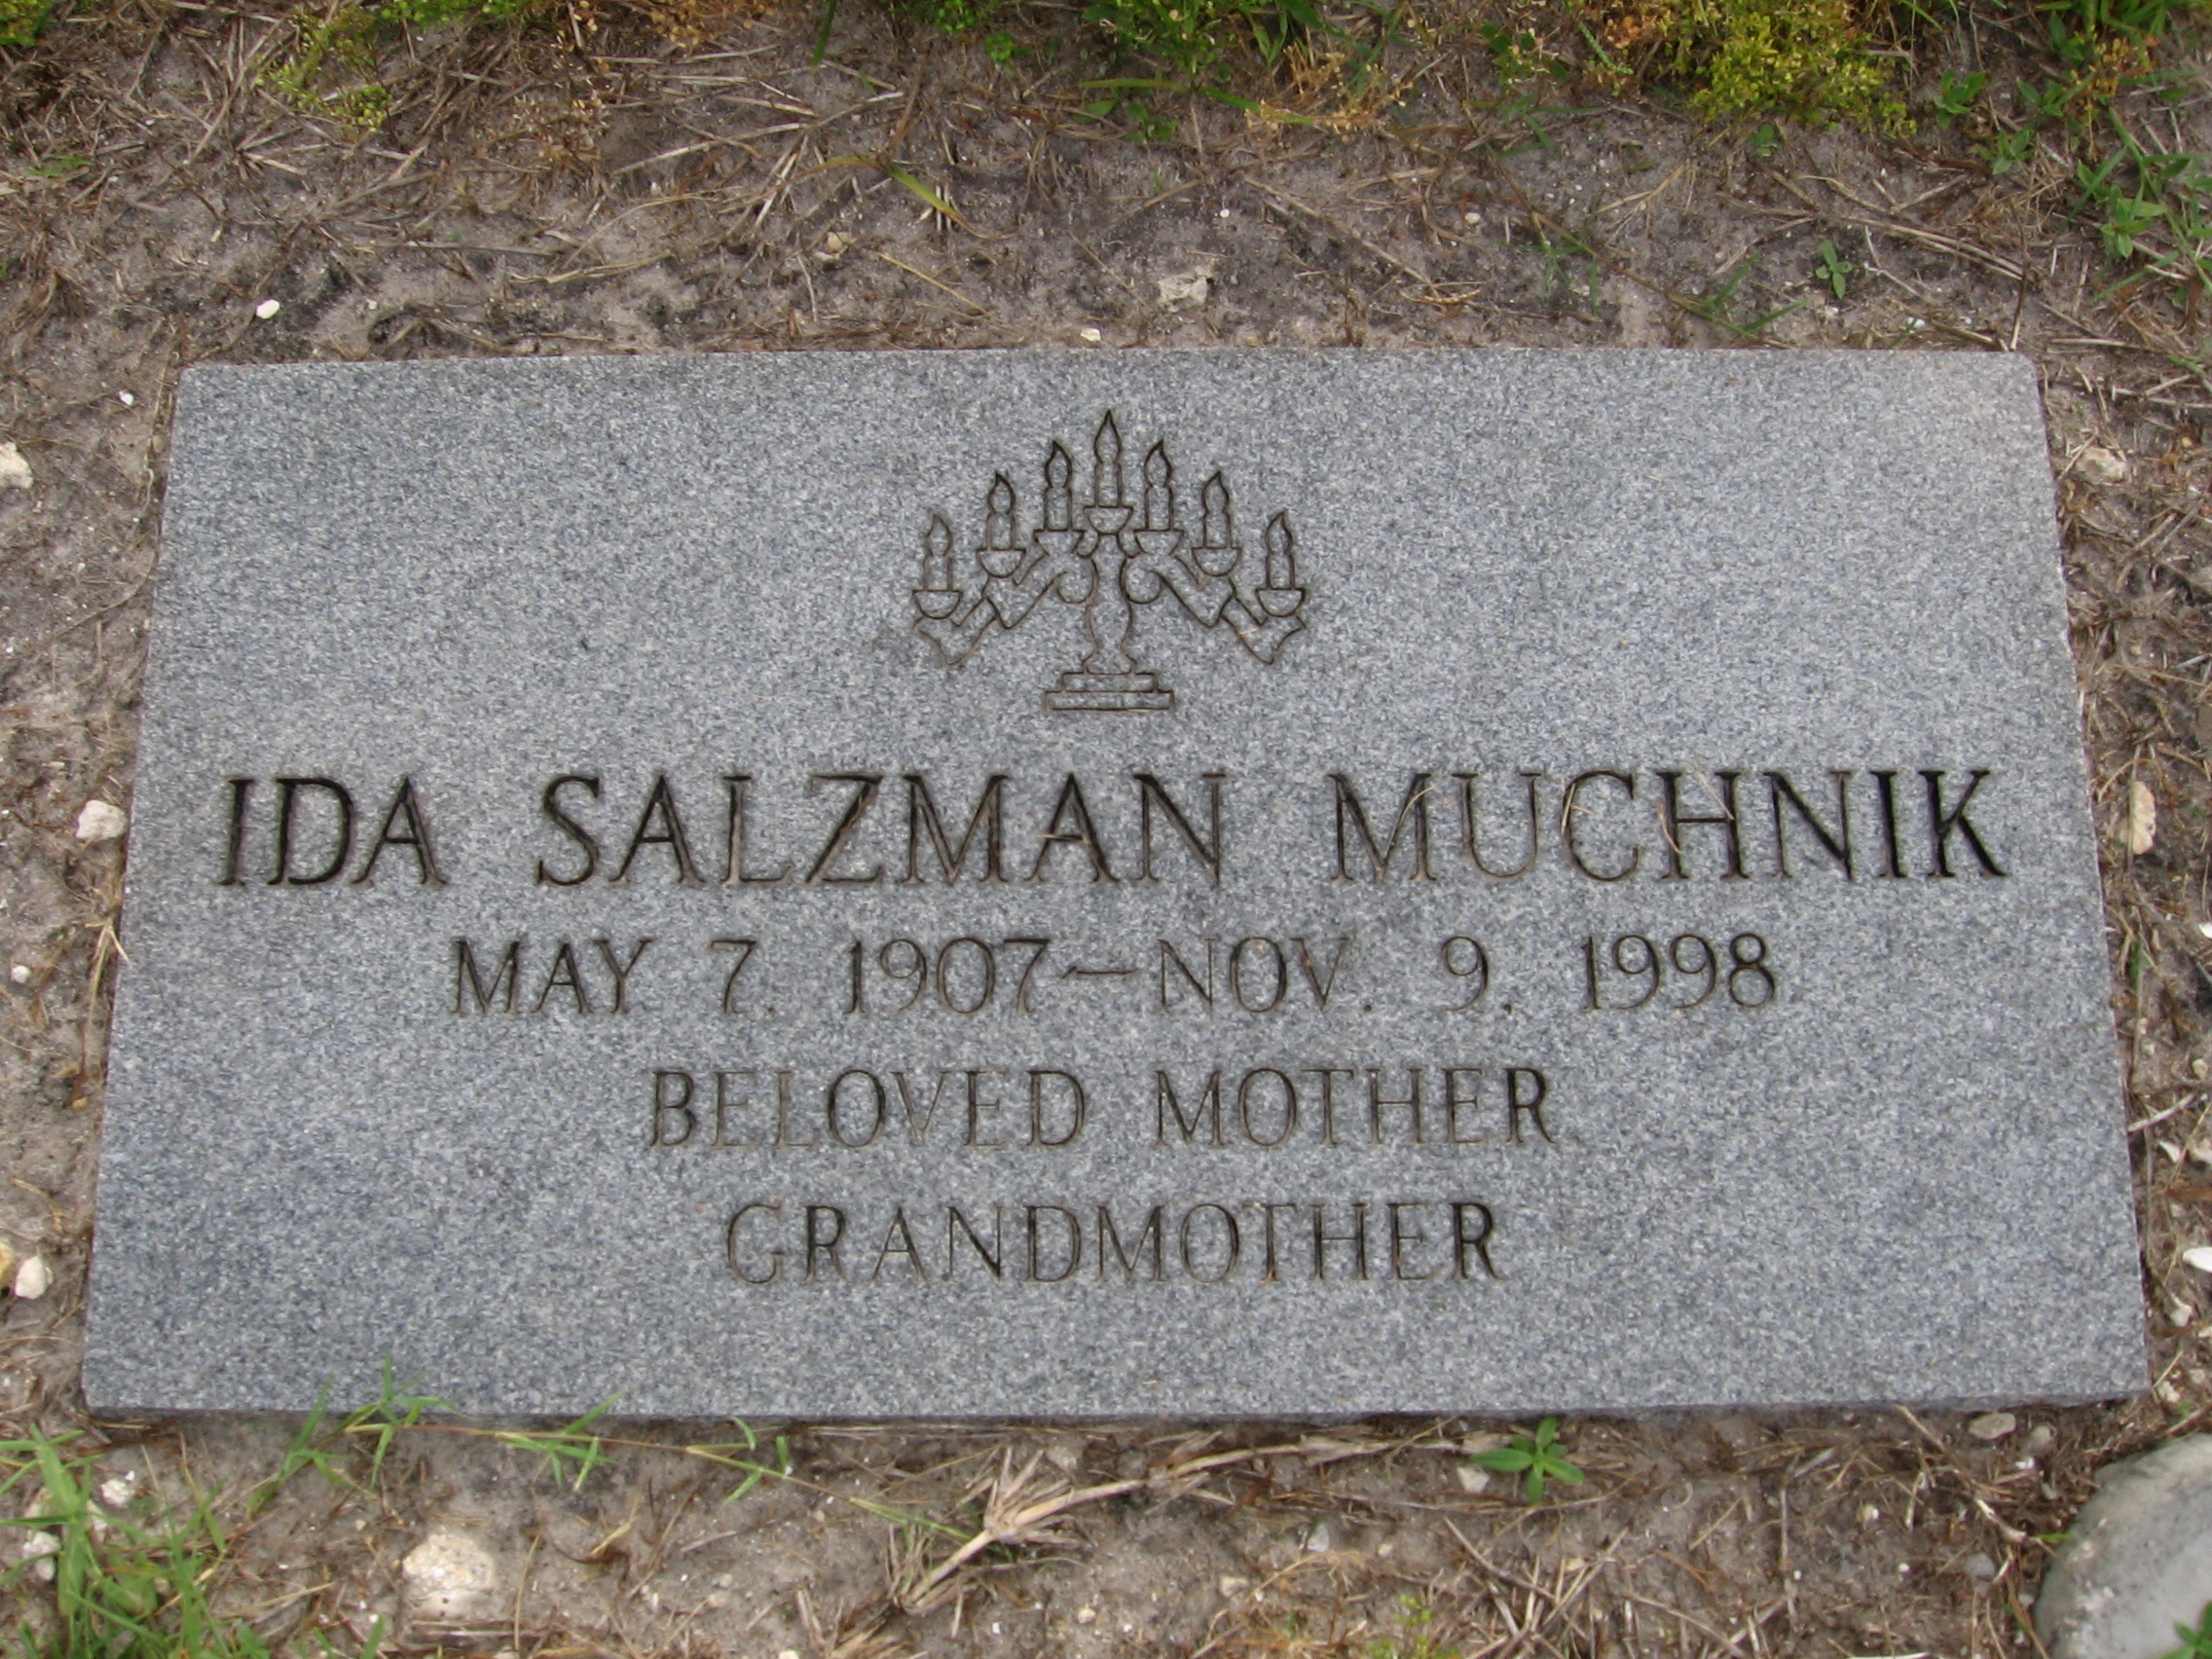 Ida Salzman Muchnik